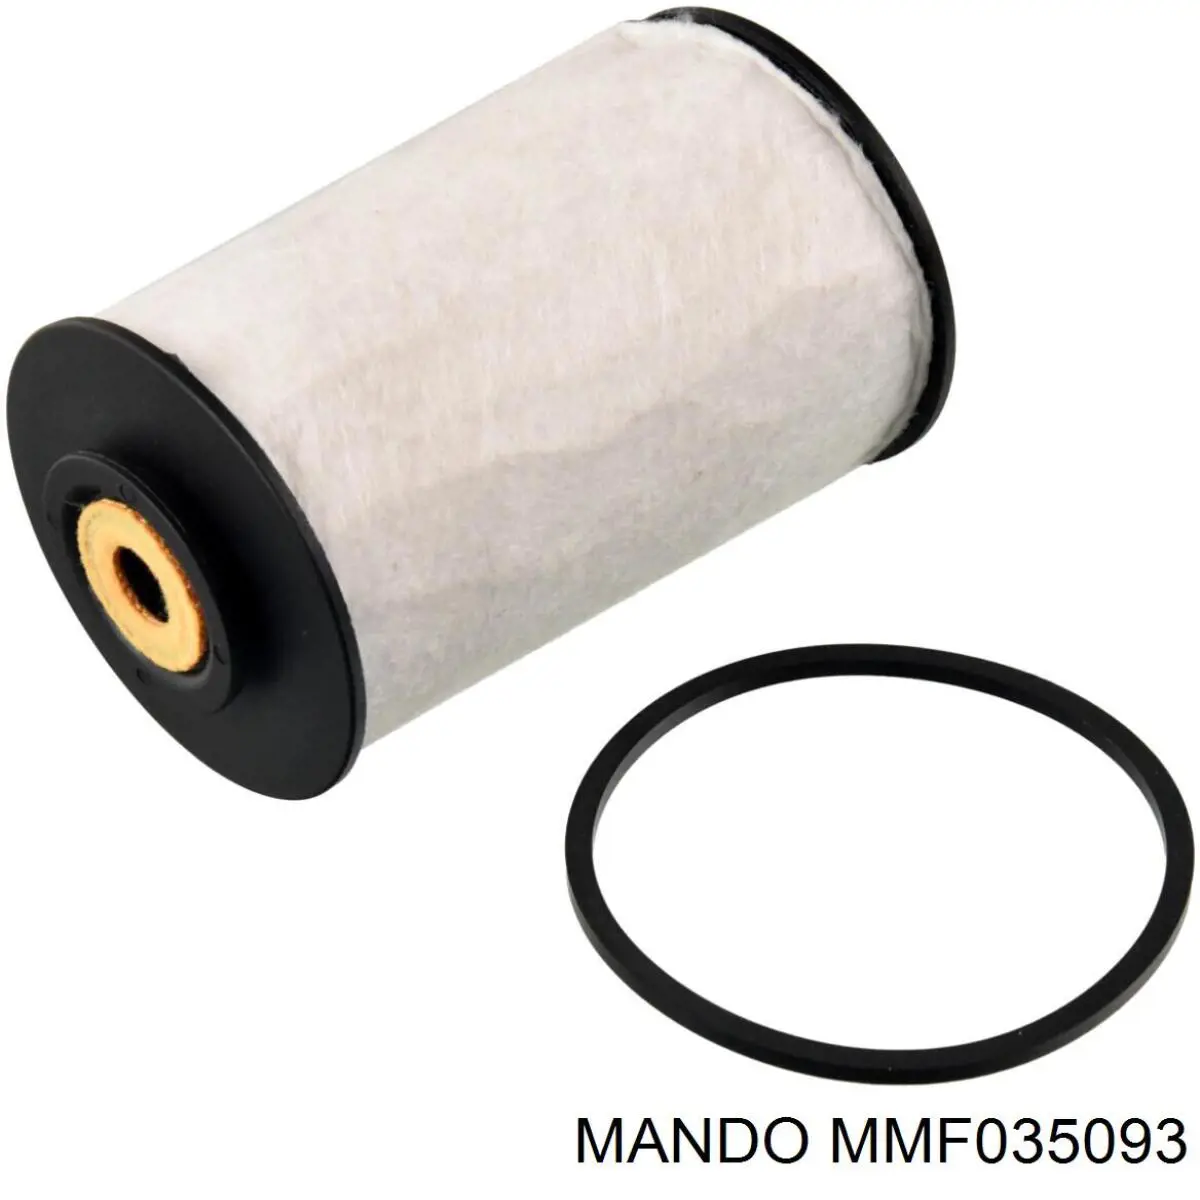 MMF035093 Mando топливный фильтр